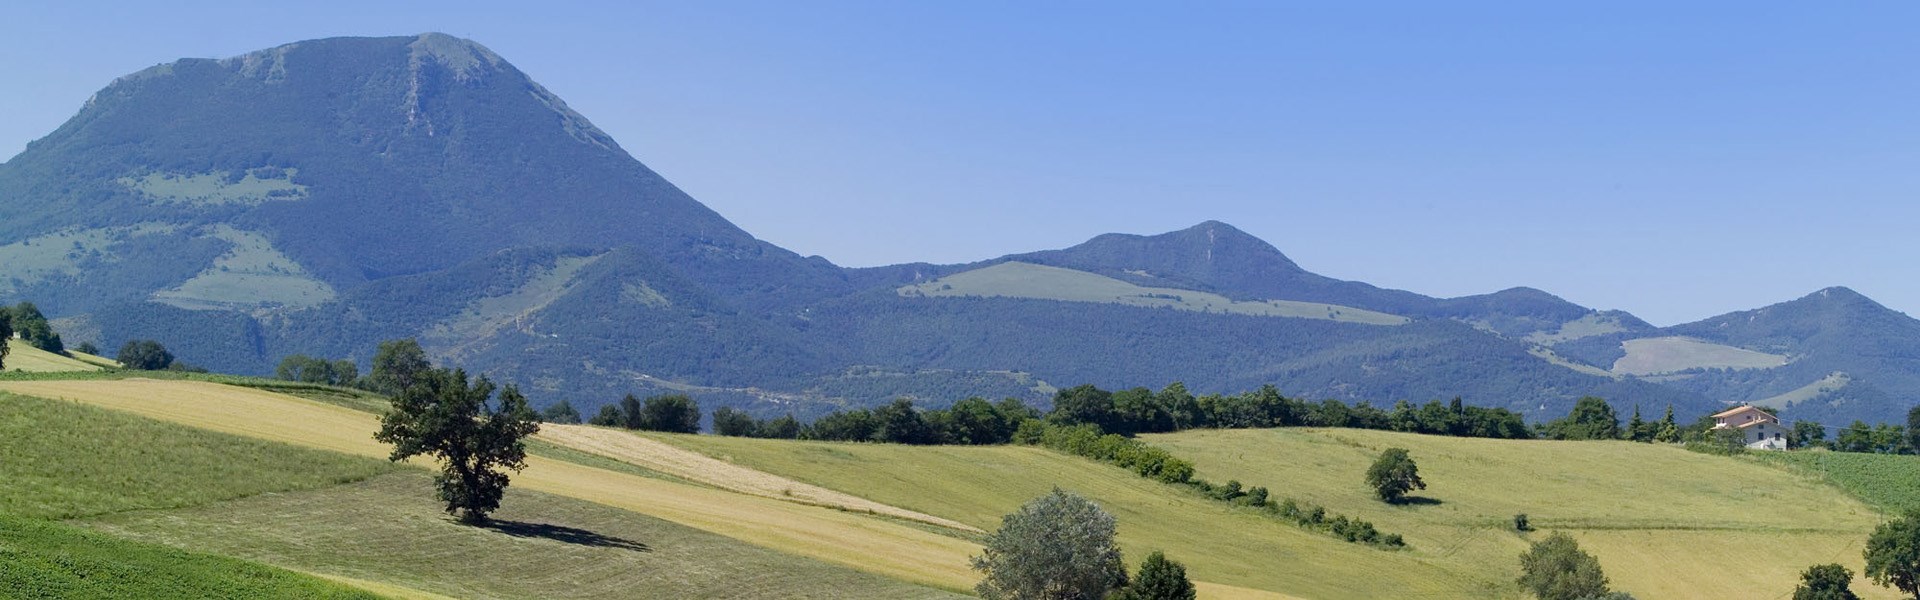 Riserva Naturale Monte San Vicino e Monte Canfaito